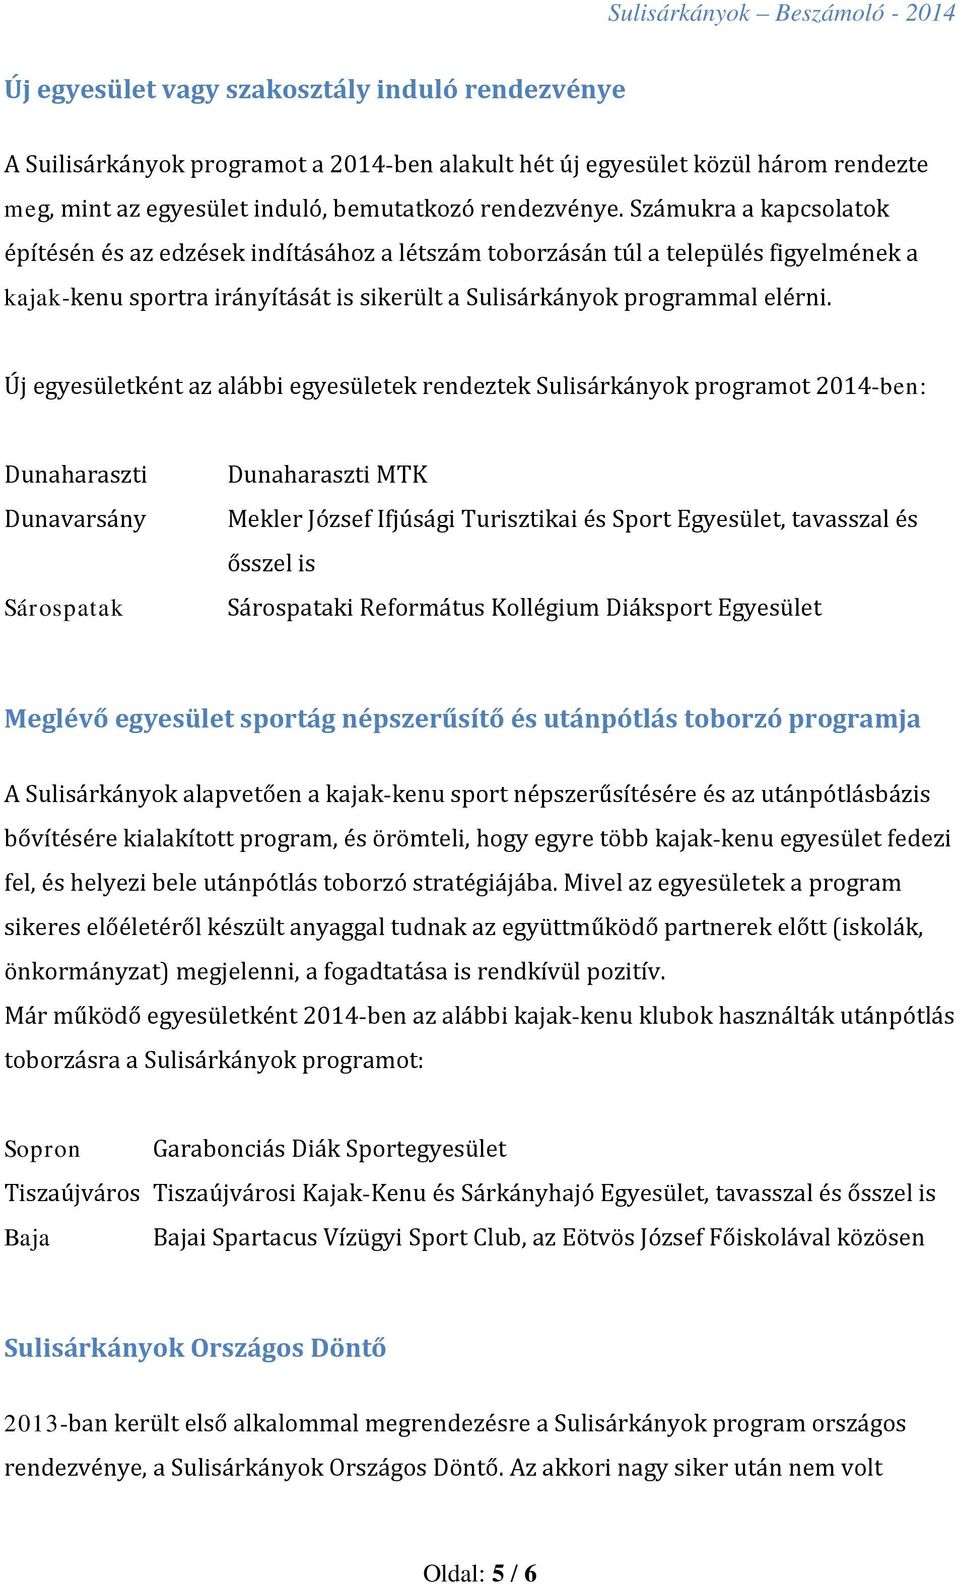 Új egyesületként az alábbi egyesületek rendeztek Sulisárkányok programot 2014-ben: Dunaharaszti Dunavarsány Sárospatak Dunaharaszti MTK Mekler József Ifjúsági Turisztikai és Sport Egyesület,